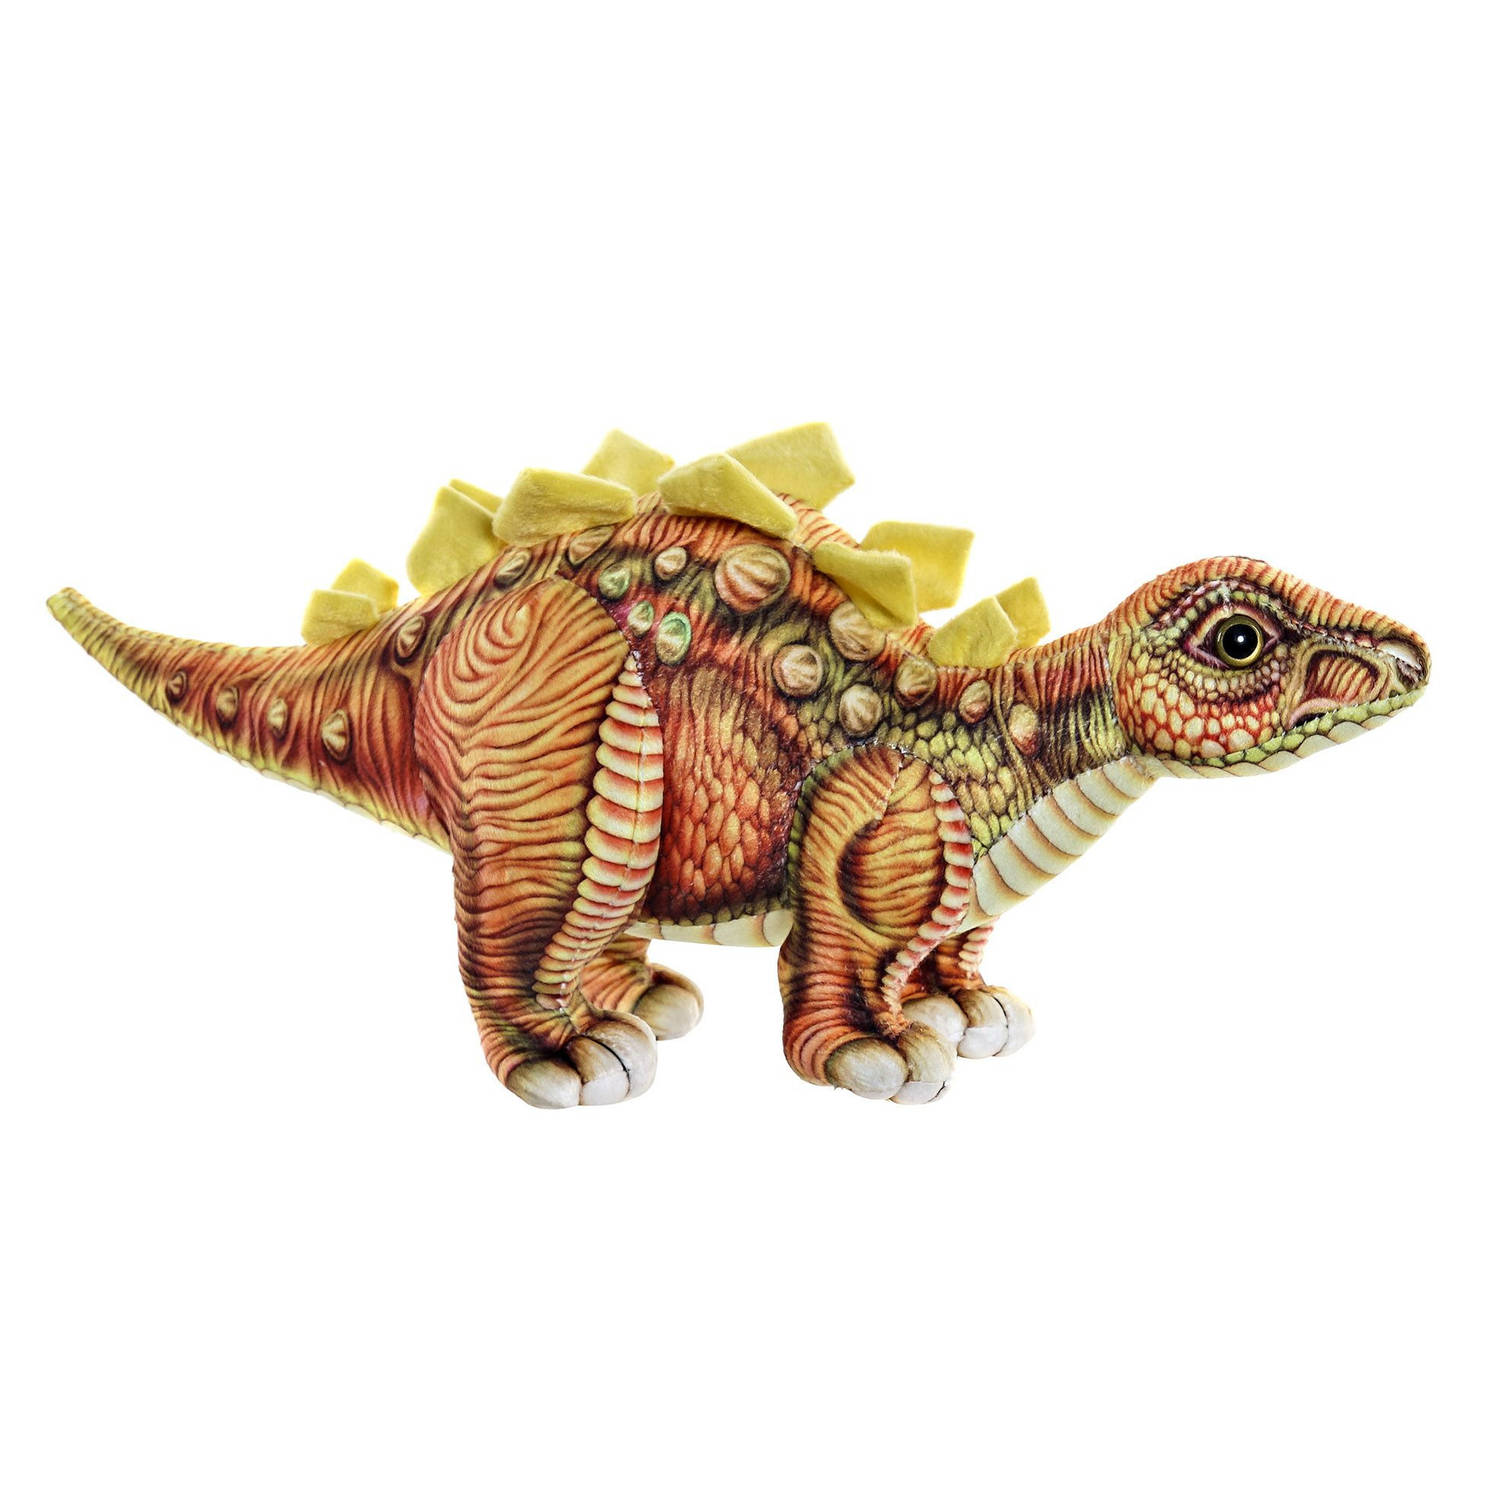 Pluche knuffel dinosaurus Stegosaurus 38 cm - Speelgoed prehistorie dino knuffeldieren voor kinderen